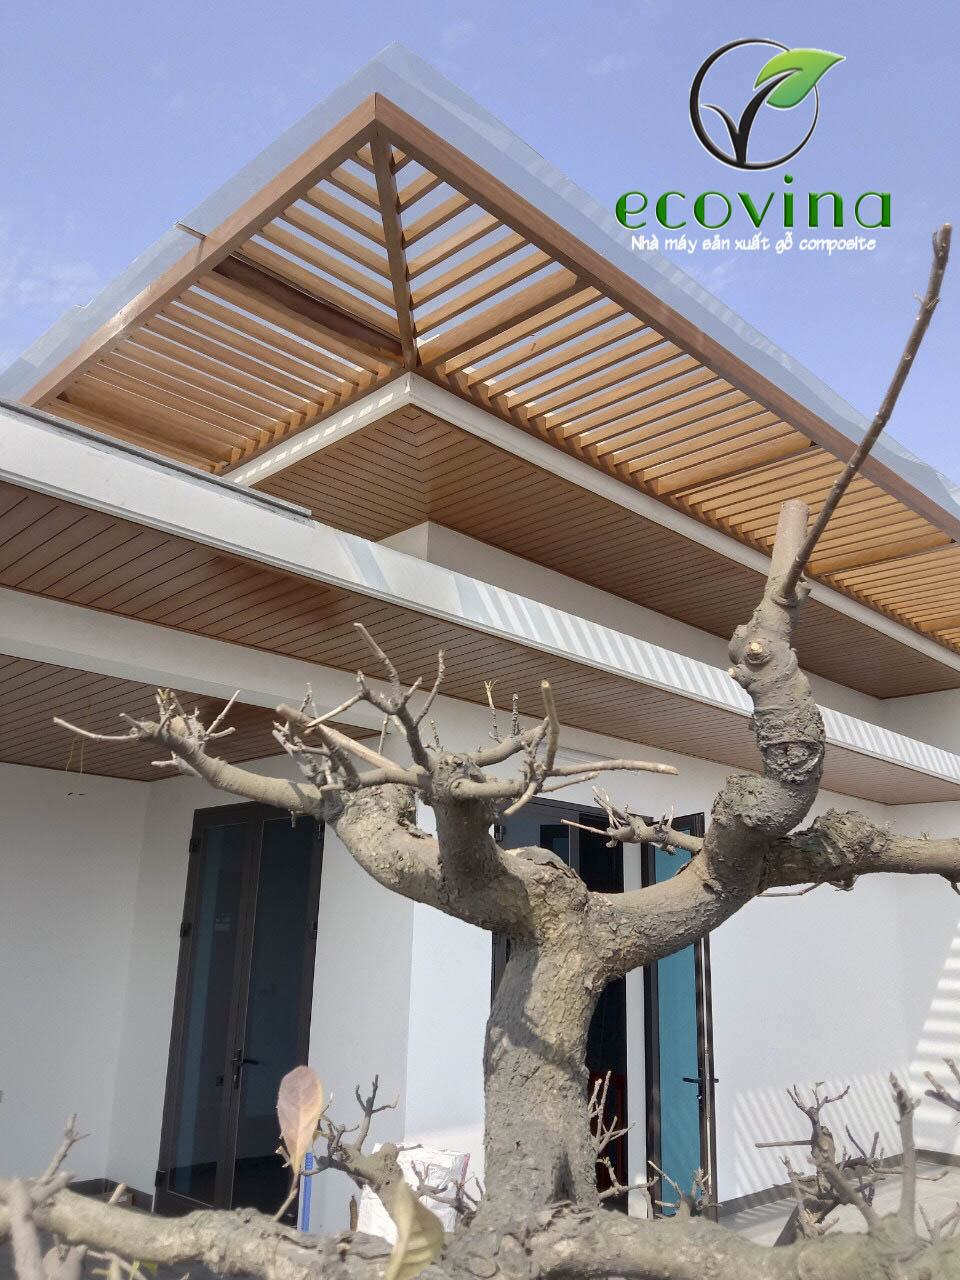 Thi công gỗ nhựa Composite Ecovina tại Bắc Ninh